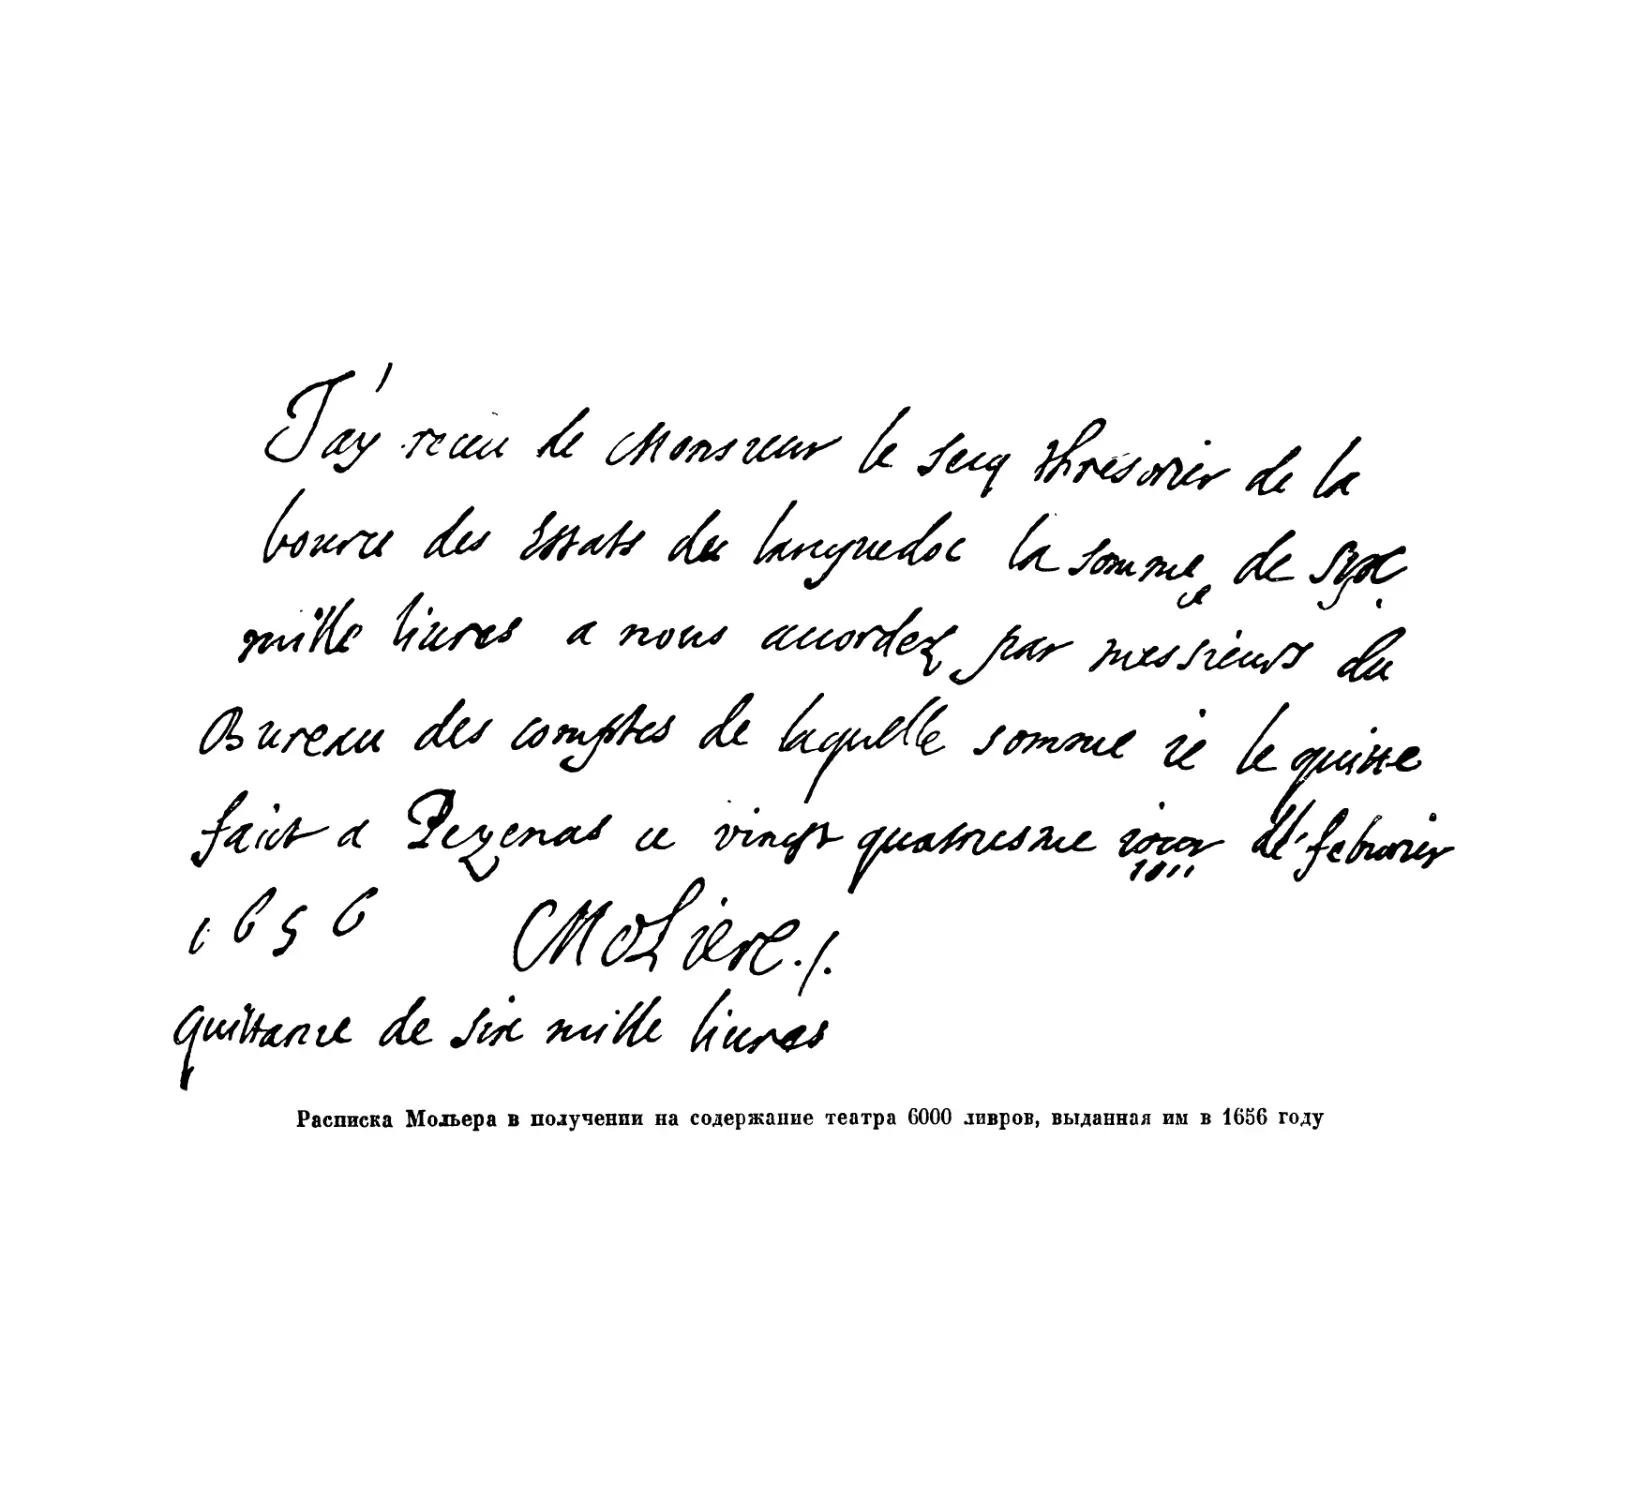 Вклейка. Расписка от февраля 1656 г. Мольера в получении на содержание театра 6000 ливров